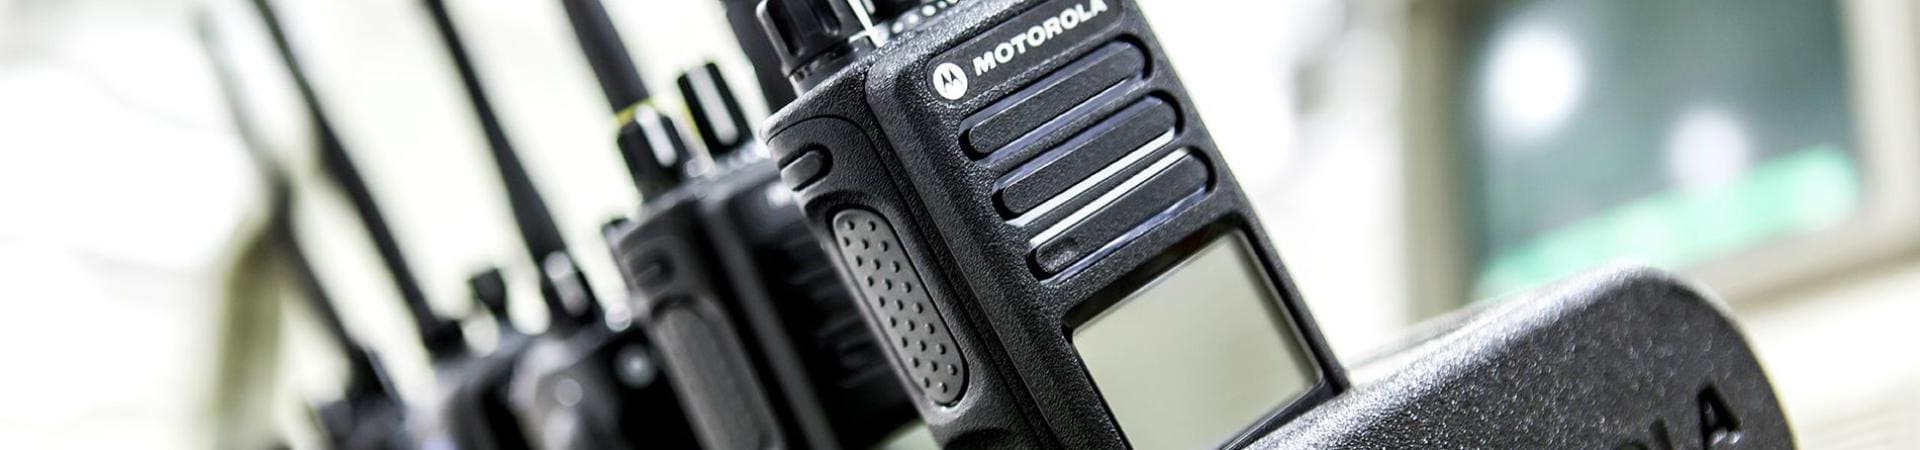 Assistência técnica Motorola rádio comunicador